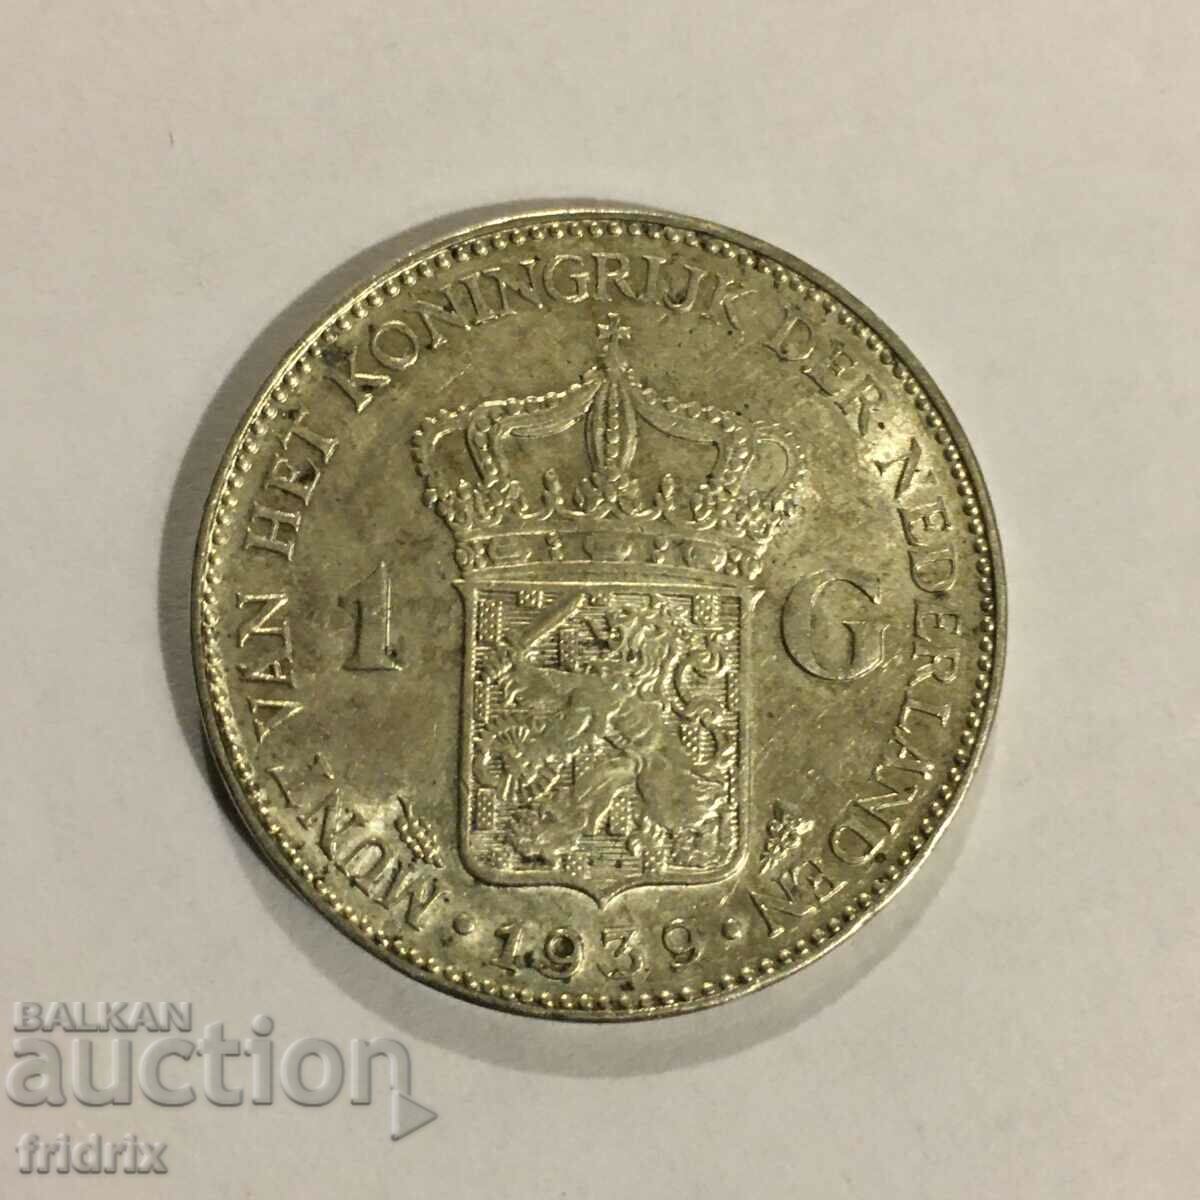 Netherlands 1 gulden 1939 / Netherlands 1 gulden 1939 UNC